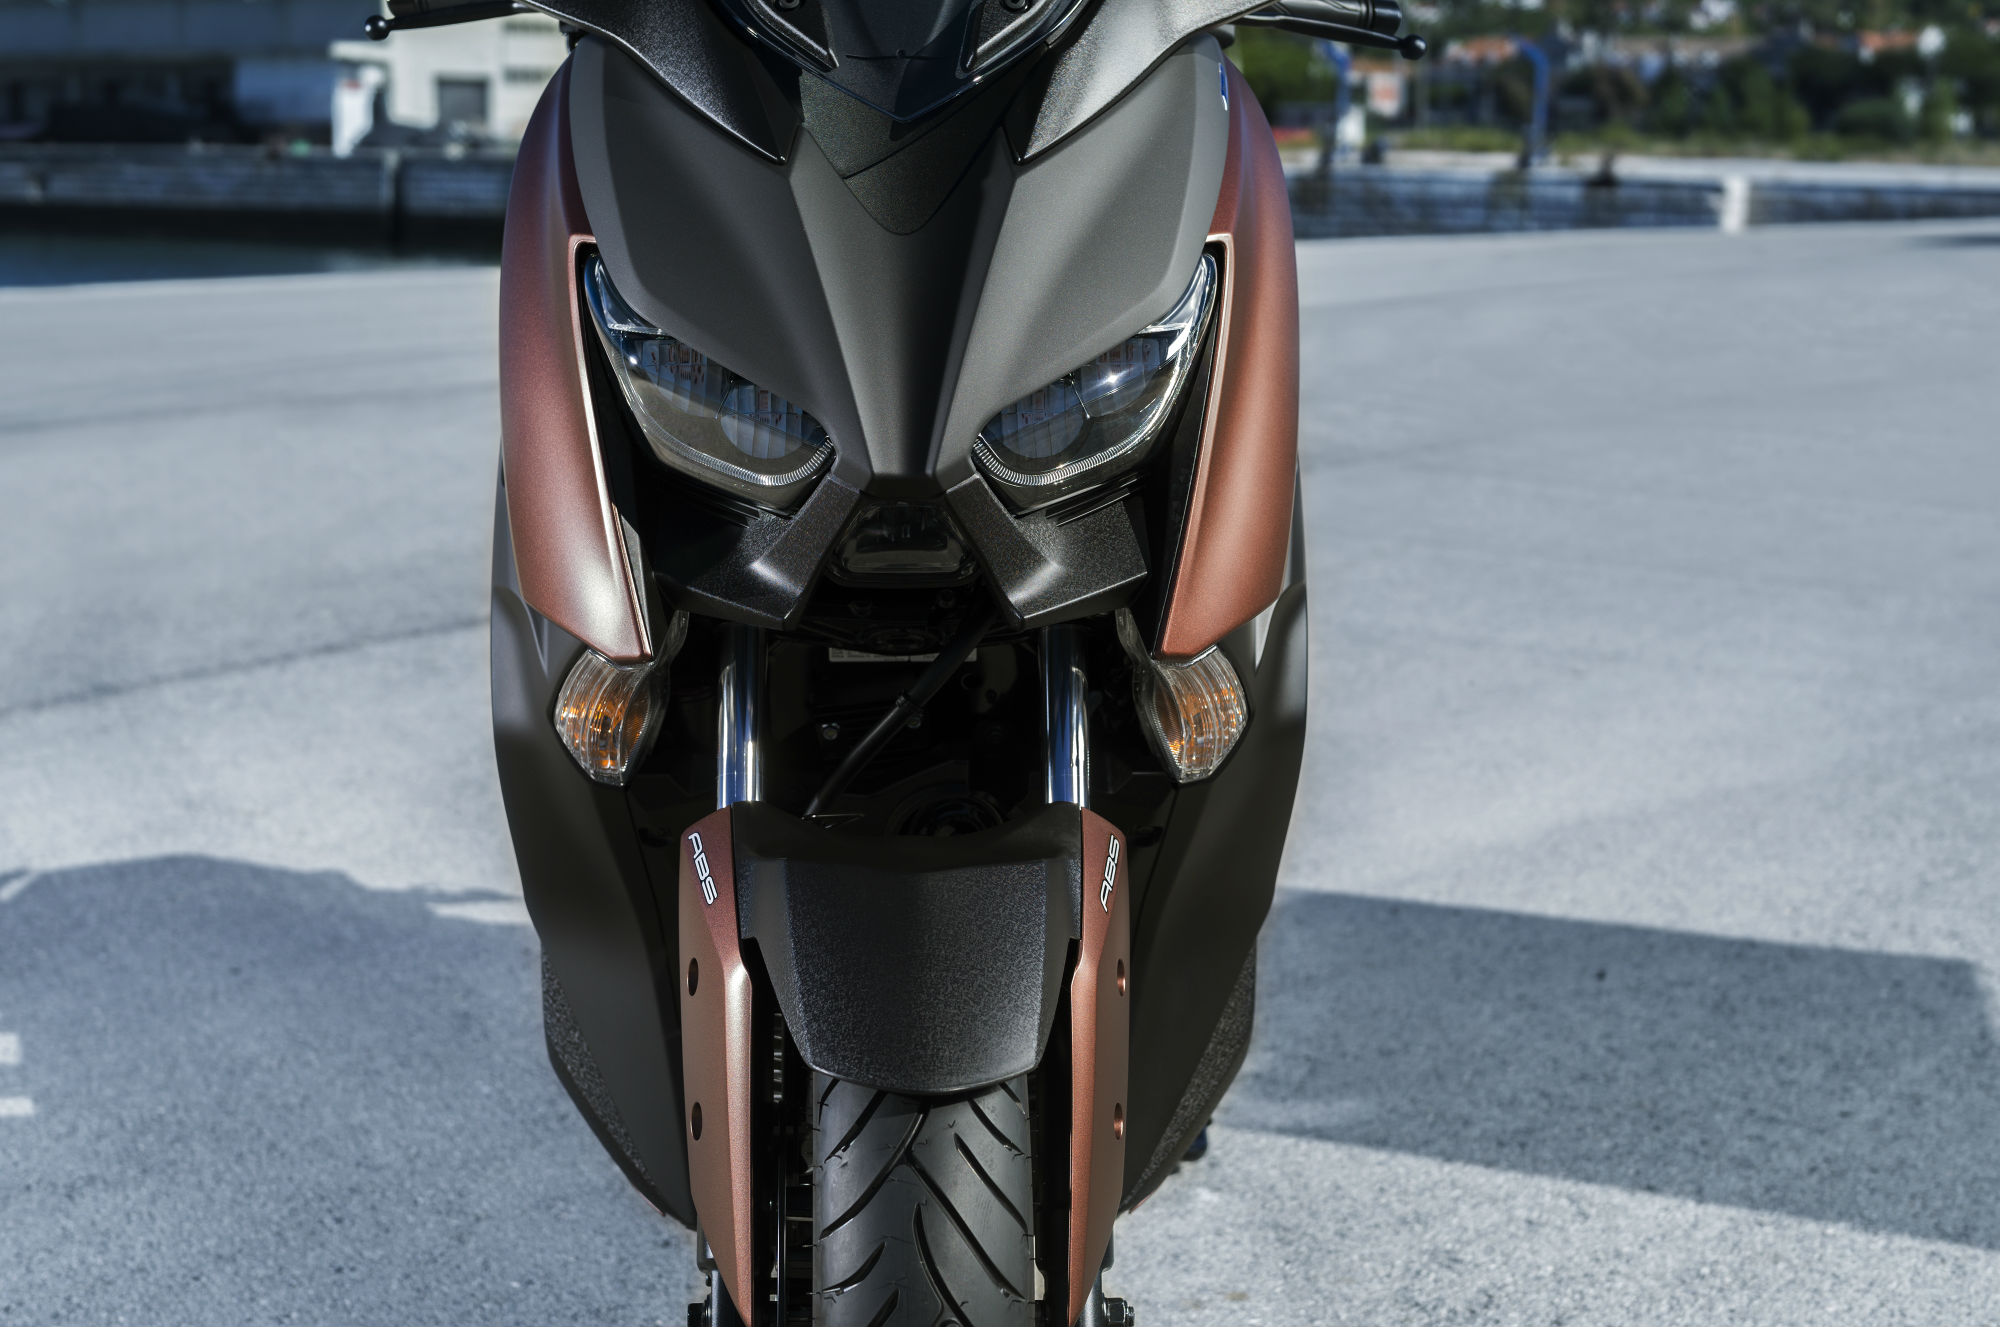 New Yamaha X-MAX 300 revealed